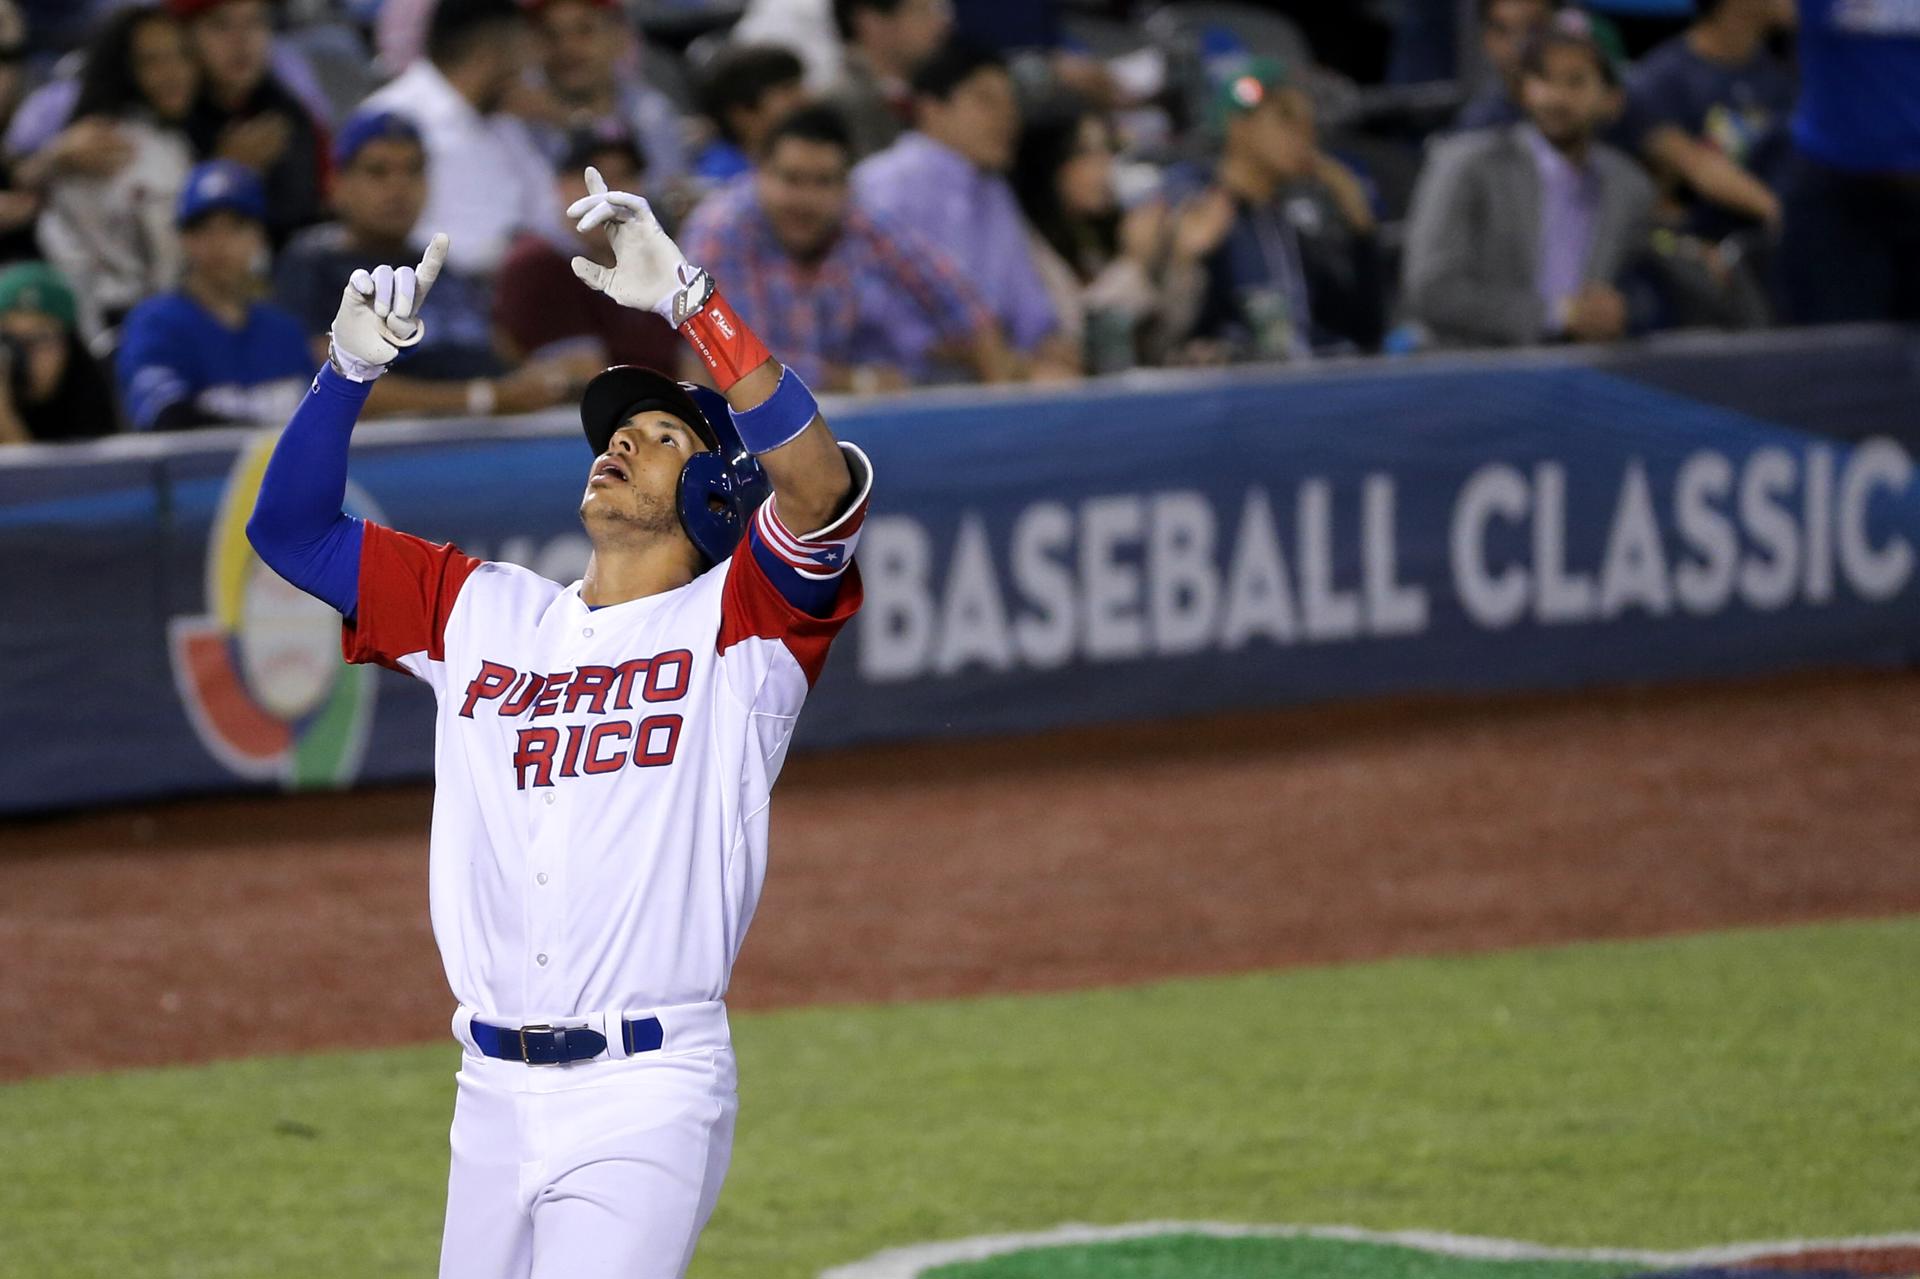 Fotografía de archivo en la que se registró al pelotero puertorriqueño Carlos Correa, al actuar con la selección de béisbol de su país. EFE/José Méndez
